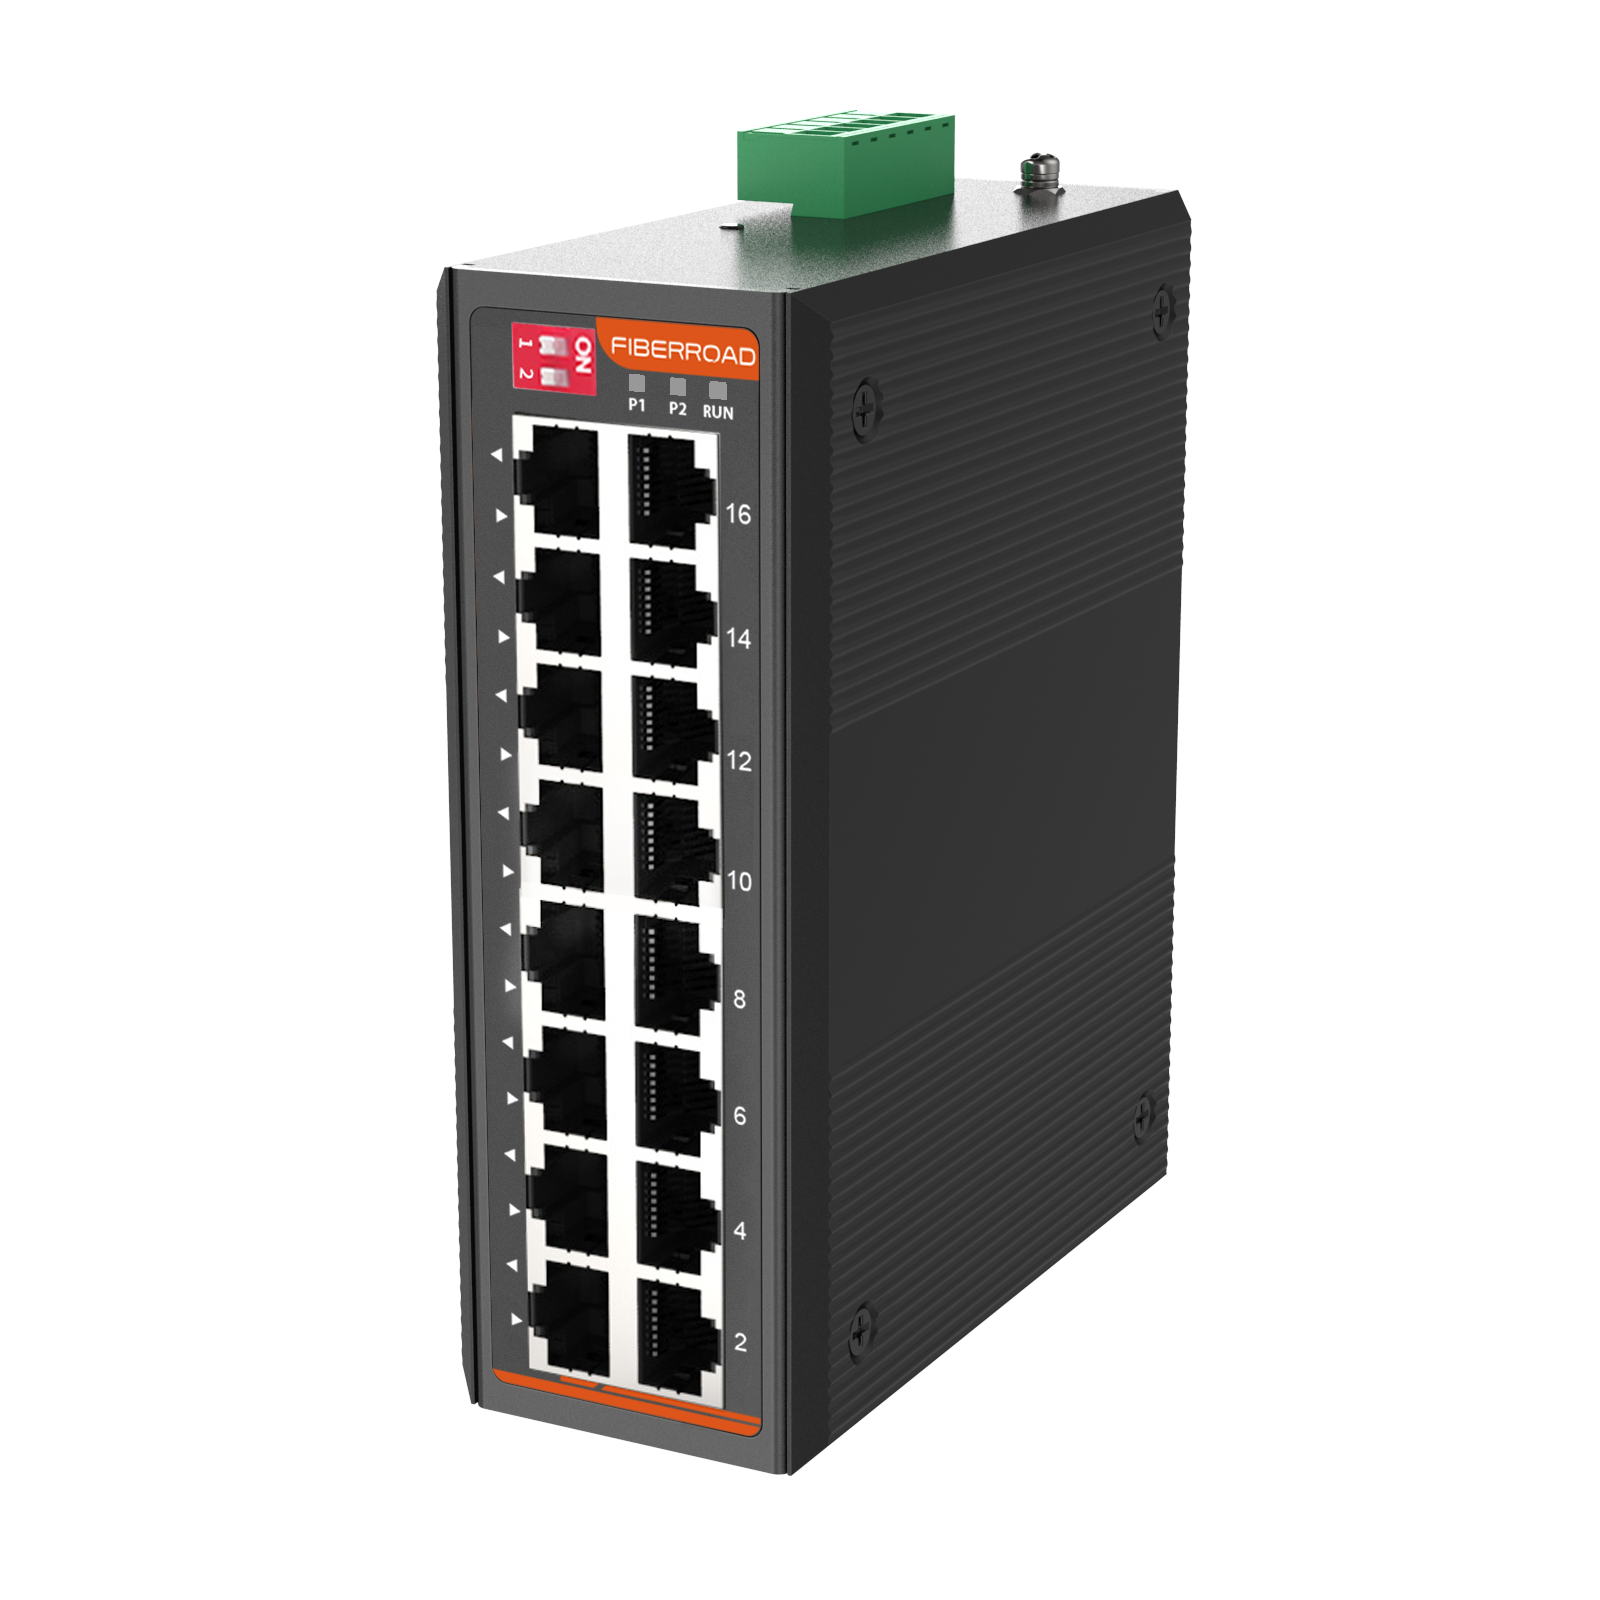 Switch réseau,Commutateur Ethernet 6 ports 10-100M,Fiber optique,2